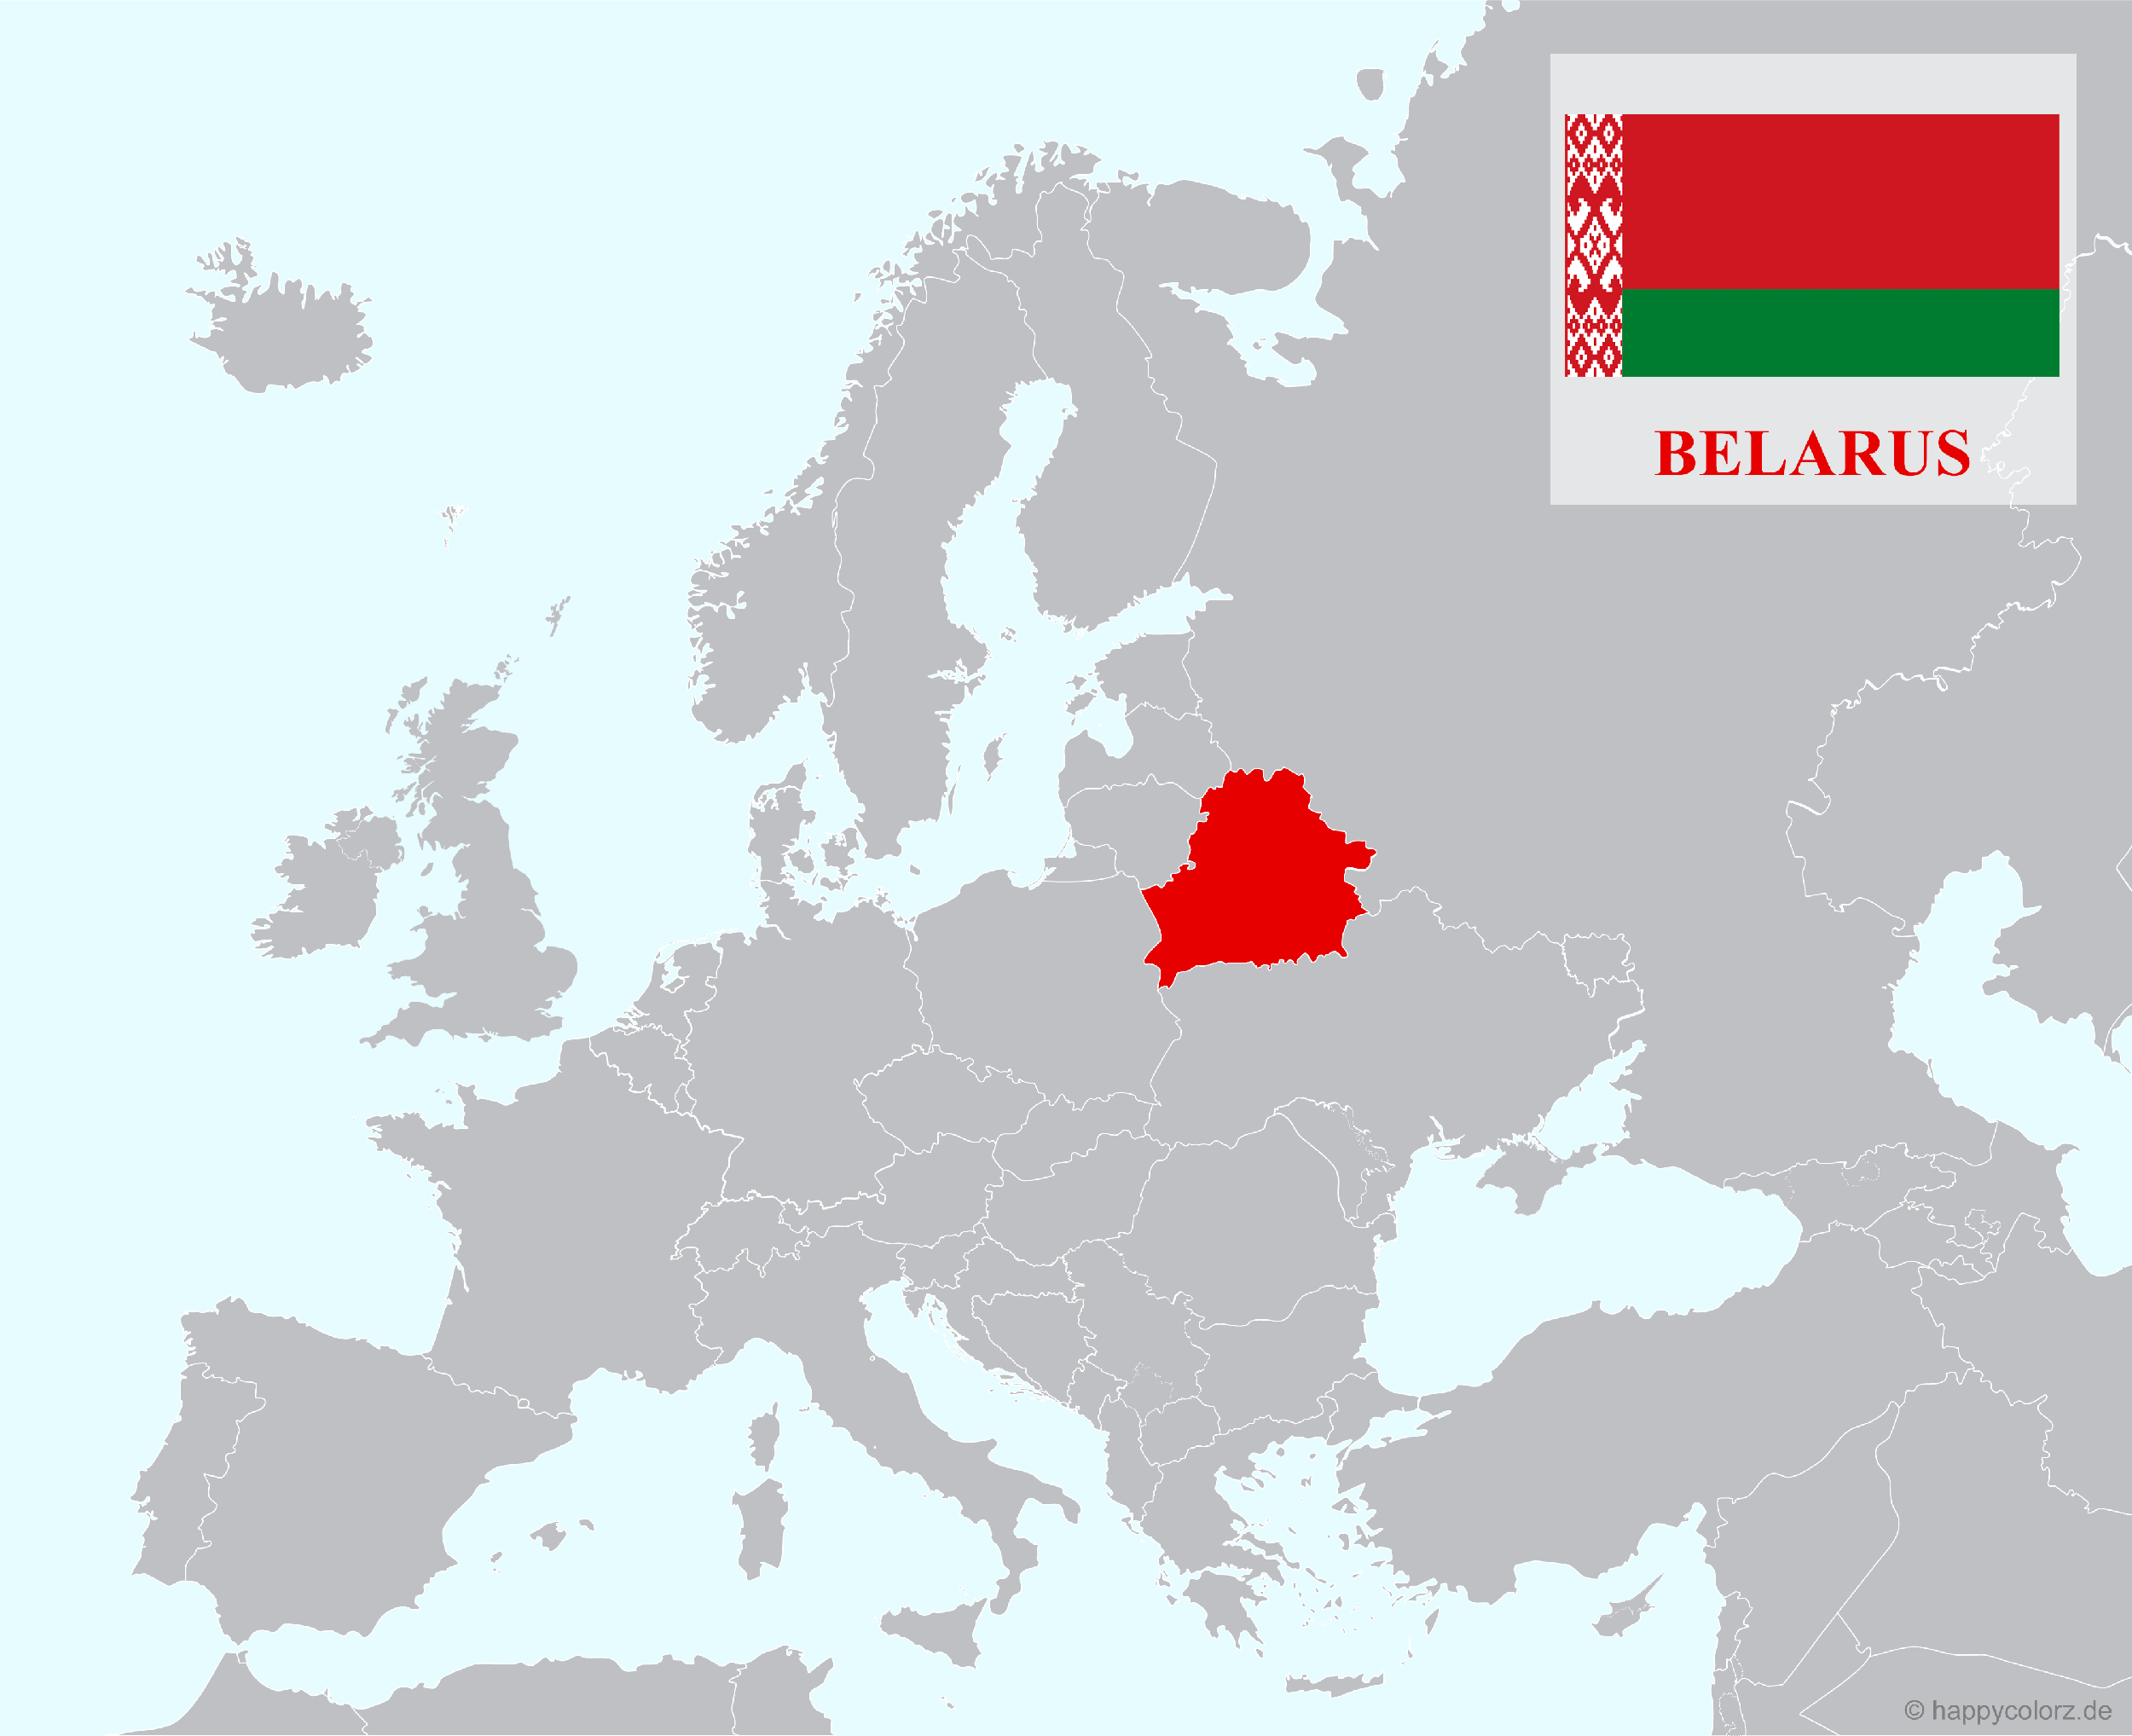 Europakarte mit Belarus als hervorgehobenes Land